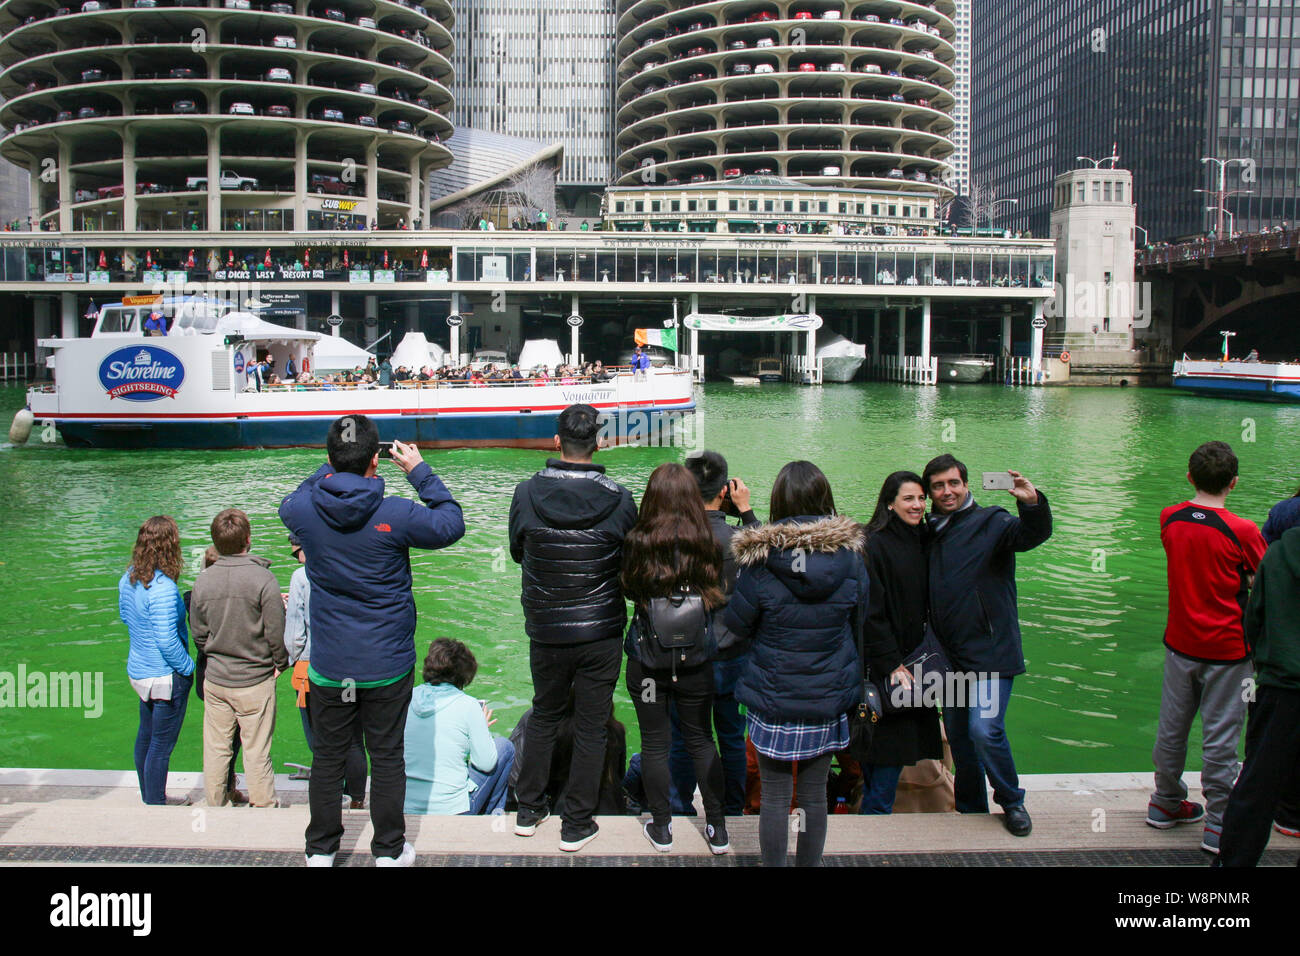 Die Menschen feiern St. Patrick's Day auf Chicago Riverwalk, Fluss gefärbt grün. Stockfoto